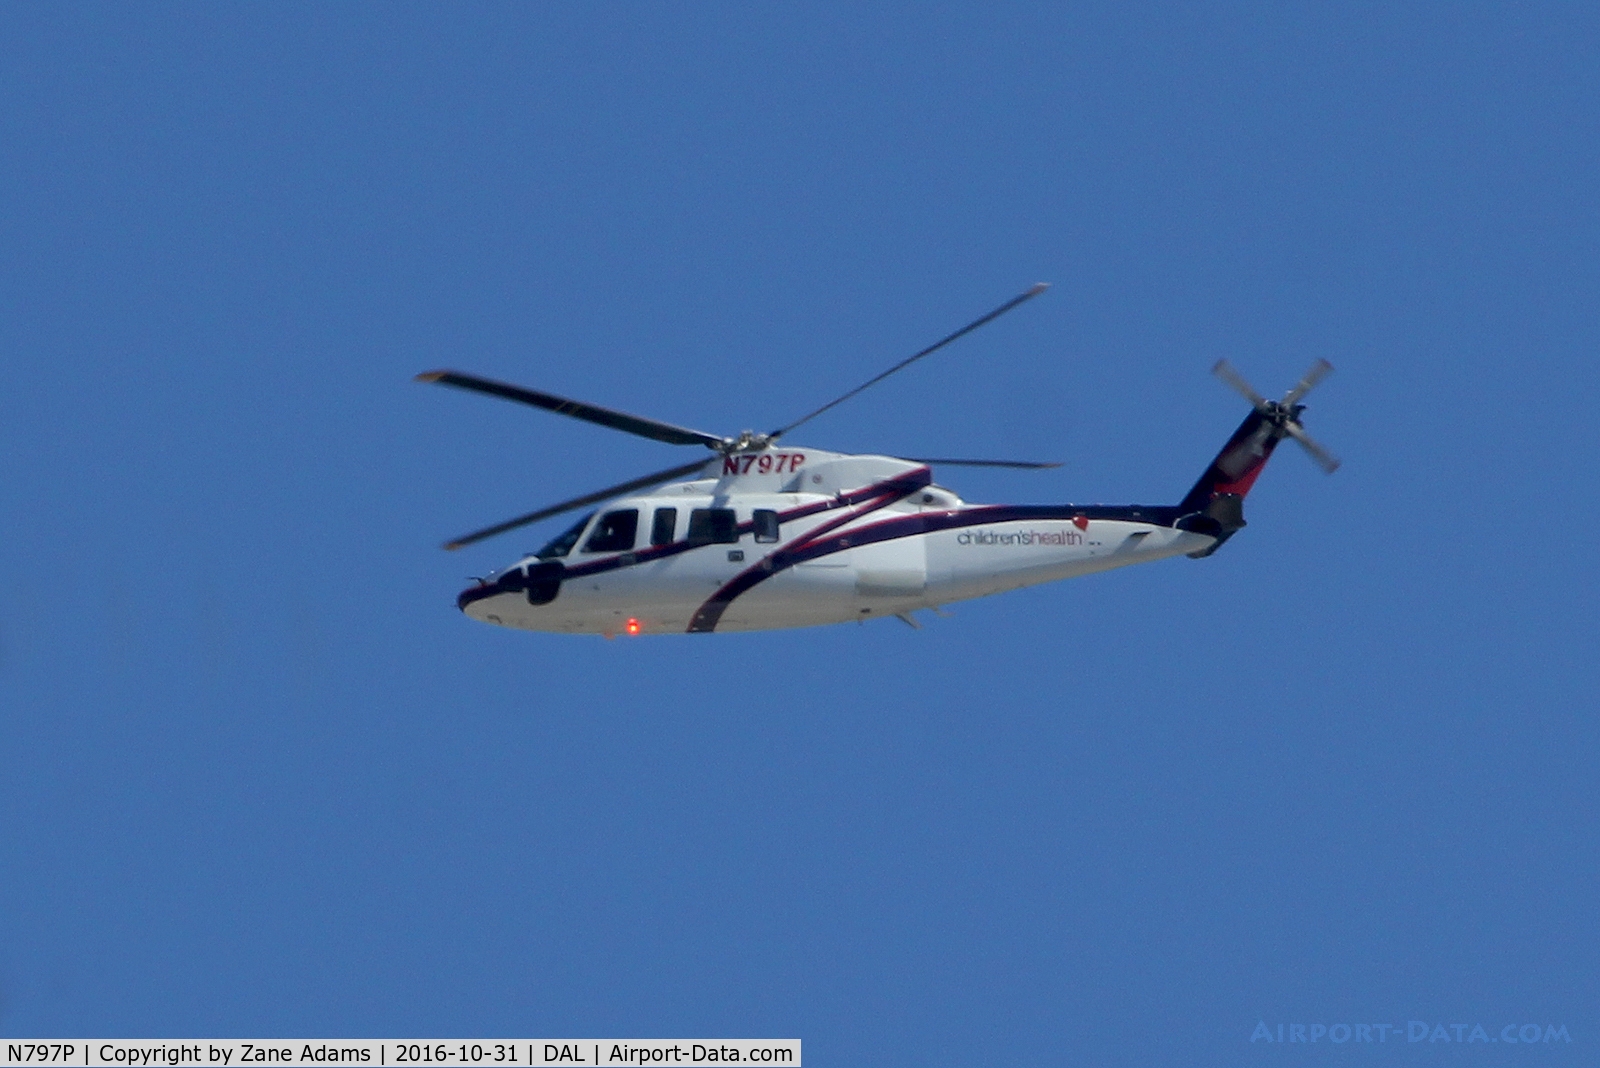 N797P, Sikorsky S-76C C/N 760742, Passing over Dallas Love Field